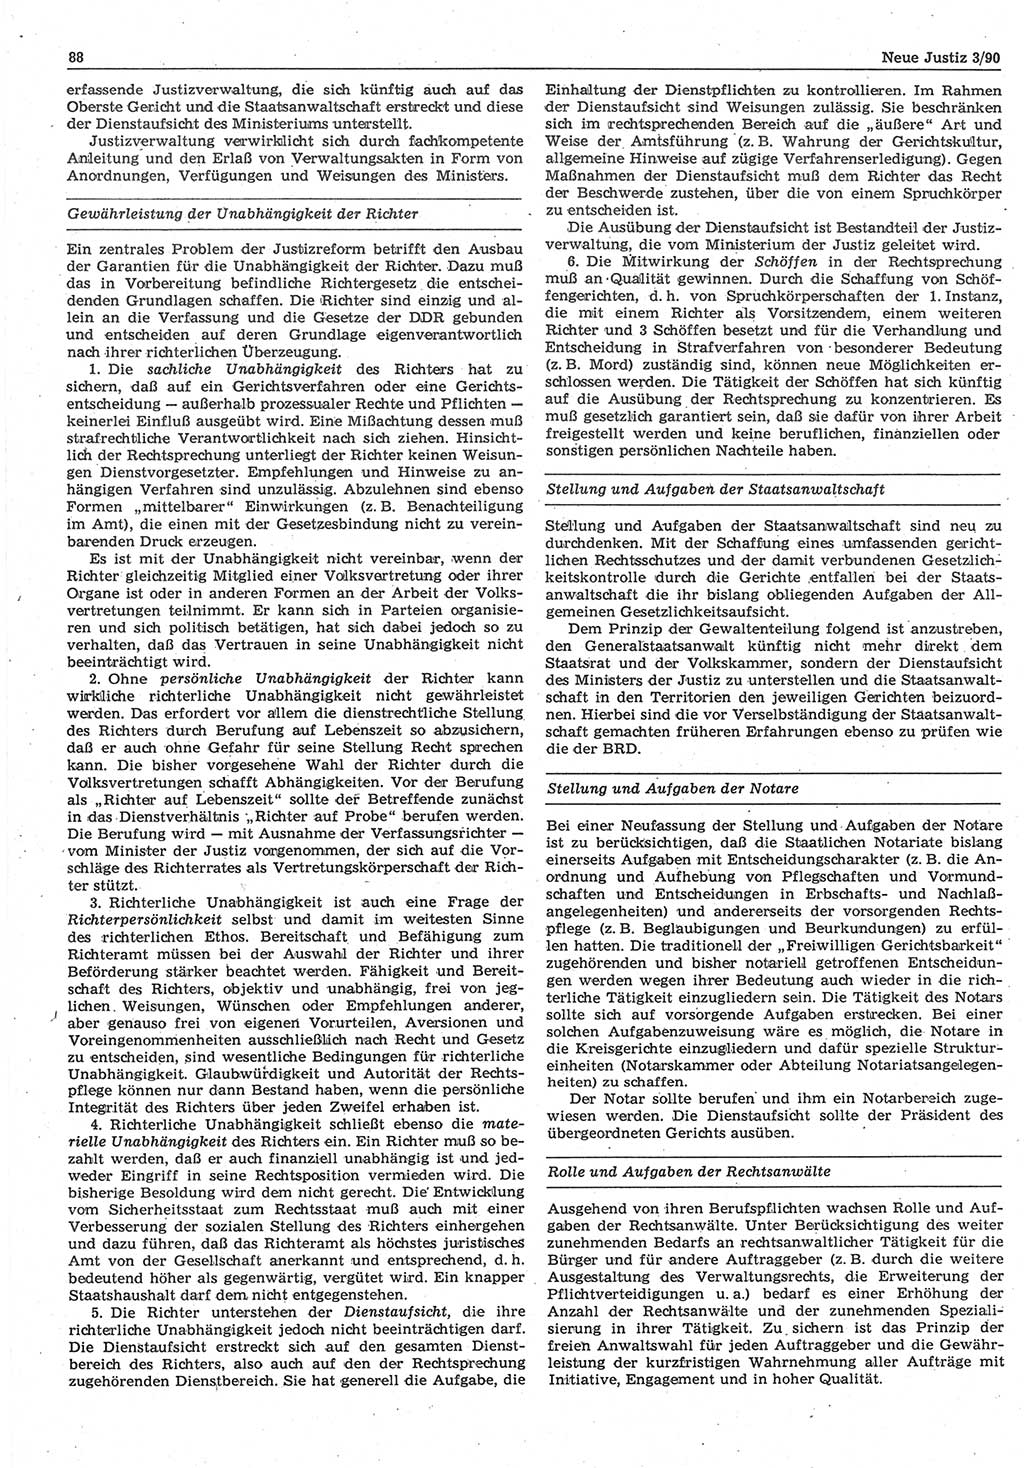 Neue Justiz (NJ), Zeitschrift für Rechtsetzung und Rechtsanwendung [Deutsche Demokratische Republik (DDR)], 44. Jahrgang 1990, Seite 88 (NJ DDR 1990, S. 88)